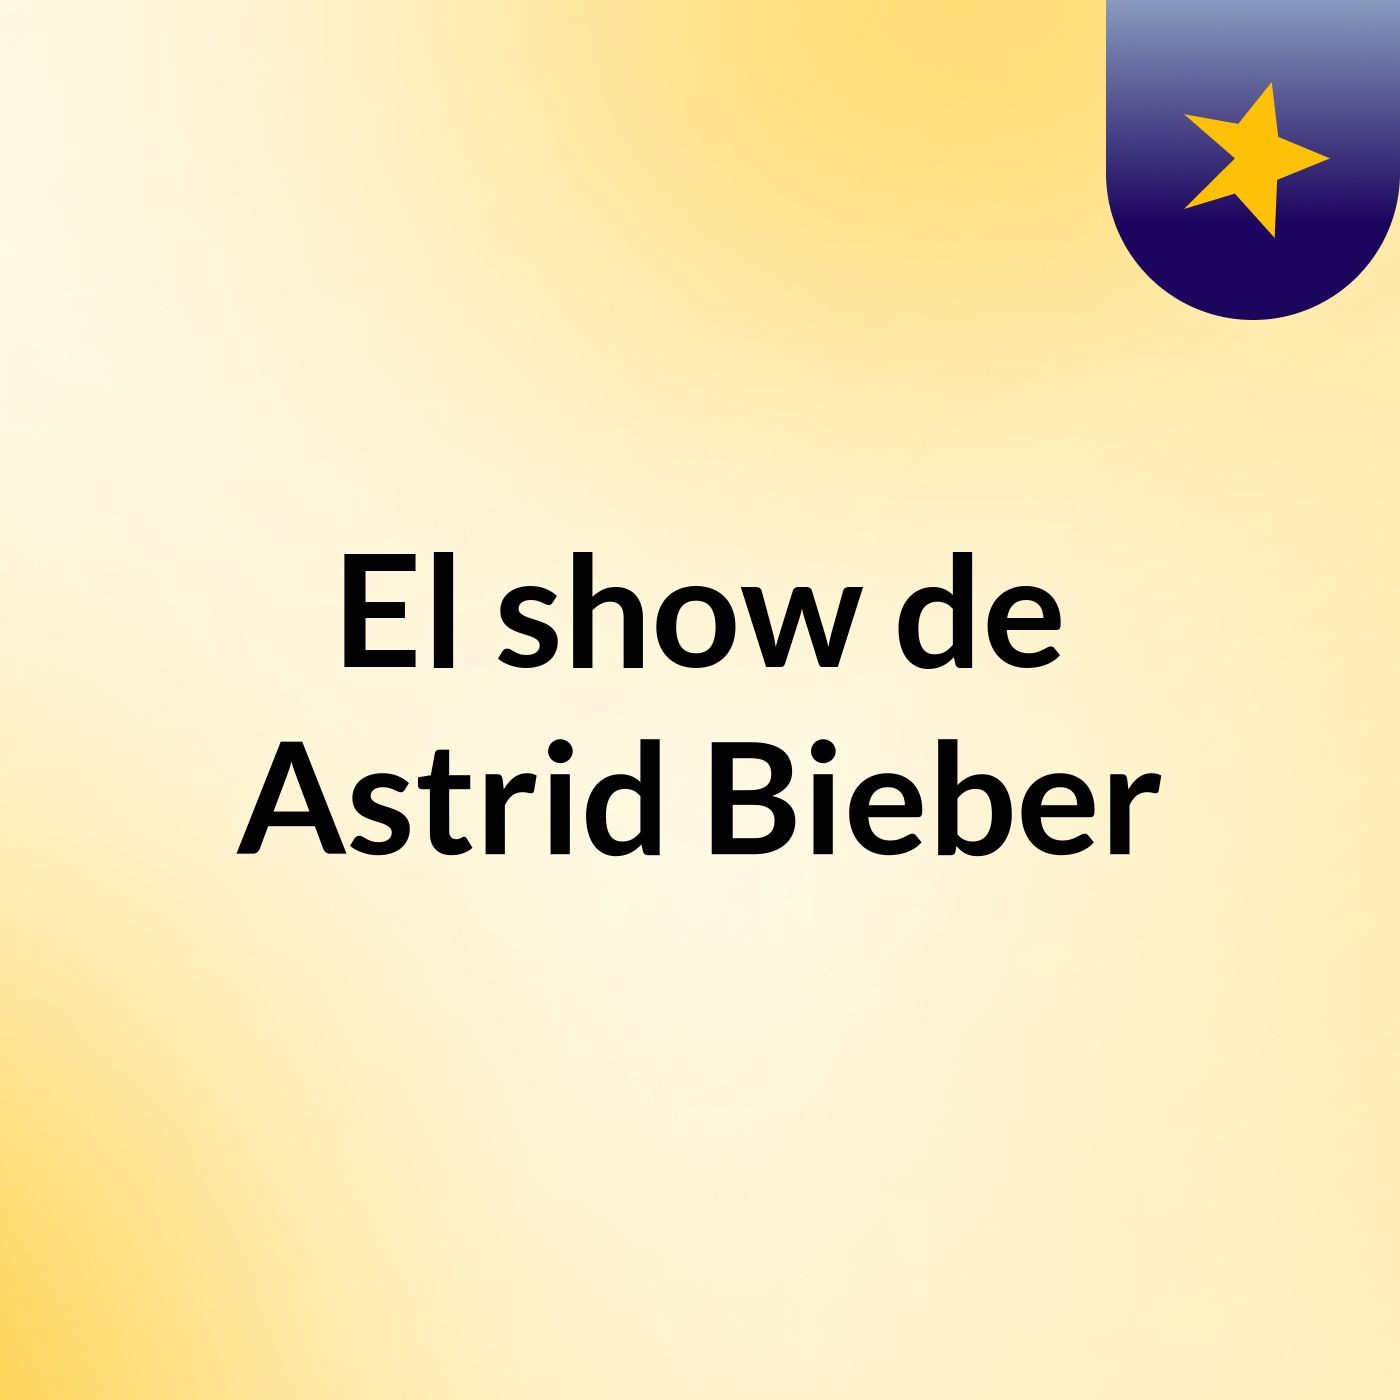 El show de Astrid Bieber